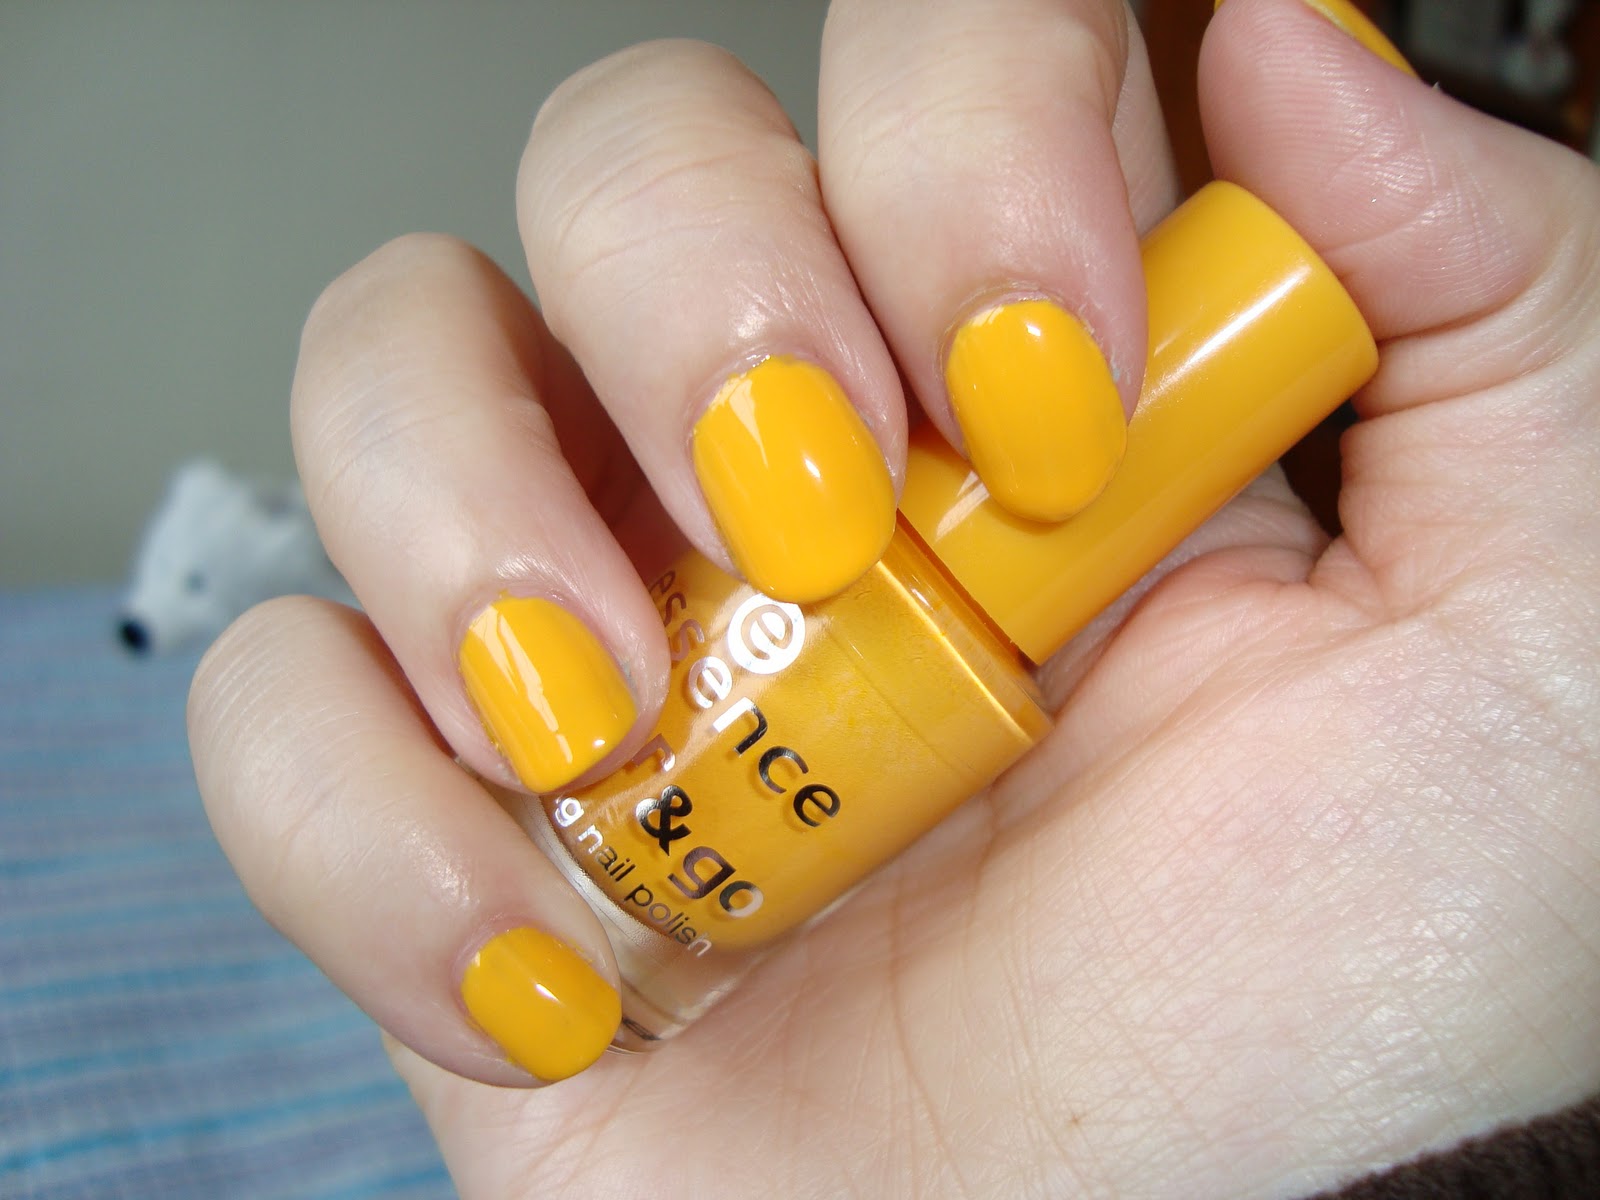 Vilcis nail designs: Desafío 31 días - Día 3 - Uñas amarillas